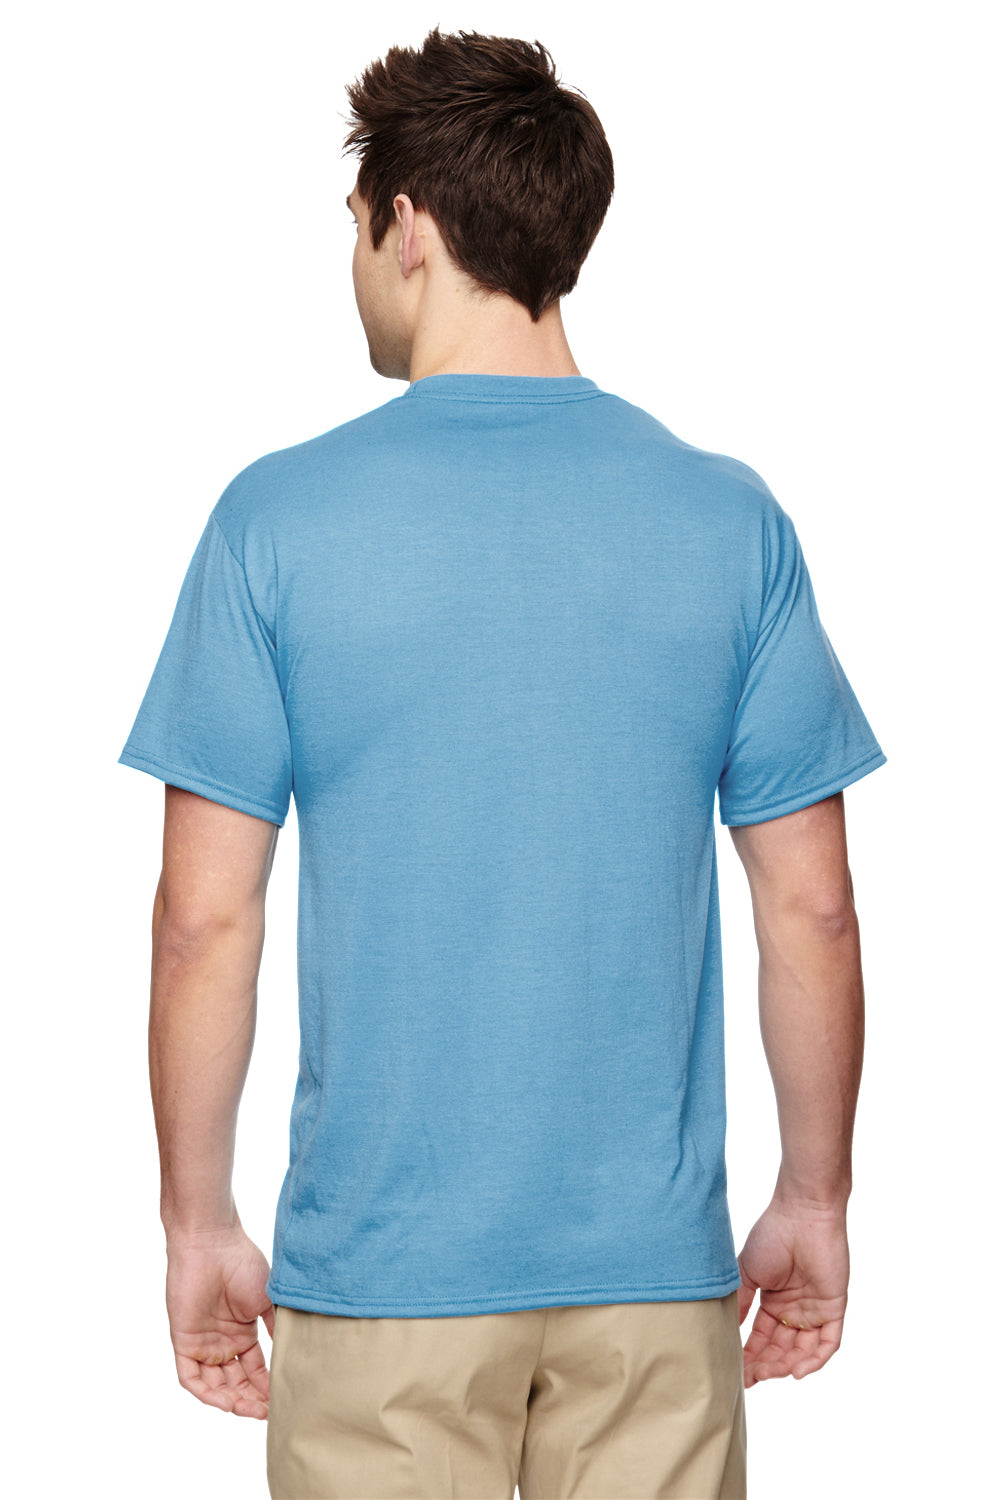 Jerzees 21M Mens Dri-Power Moisture Wicking Short Sleeve Crewneck T-Shirt Light Blue Back